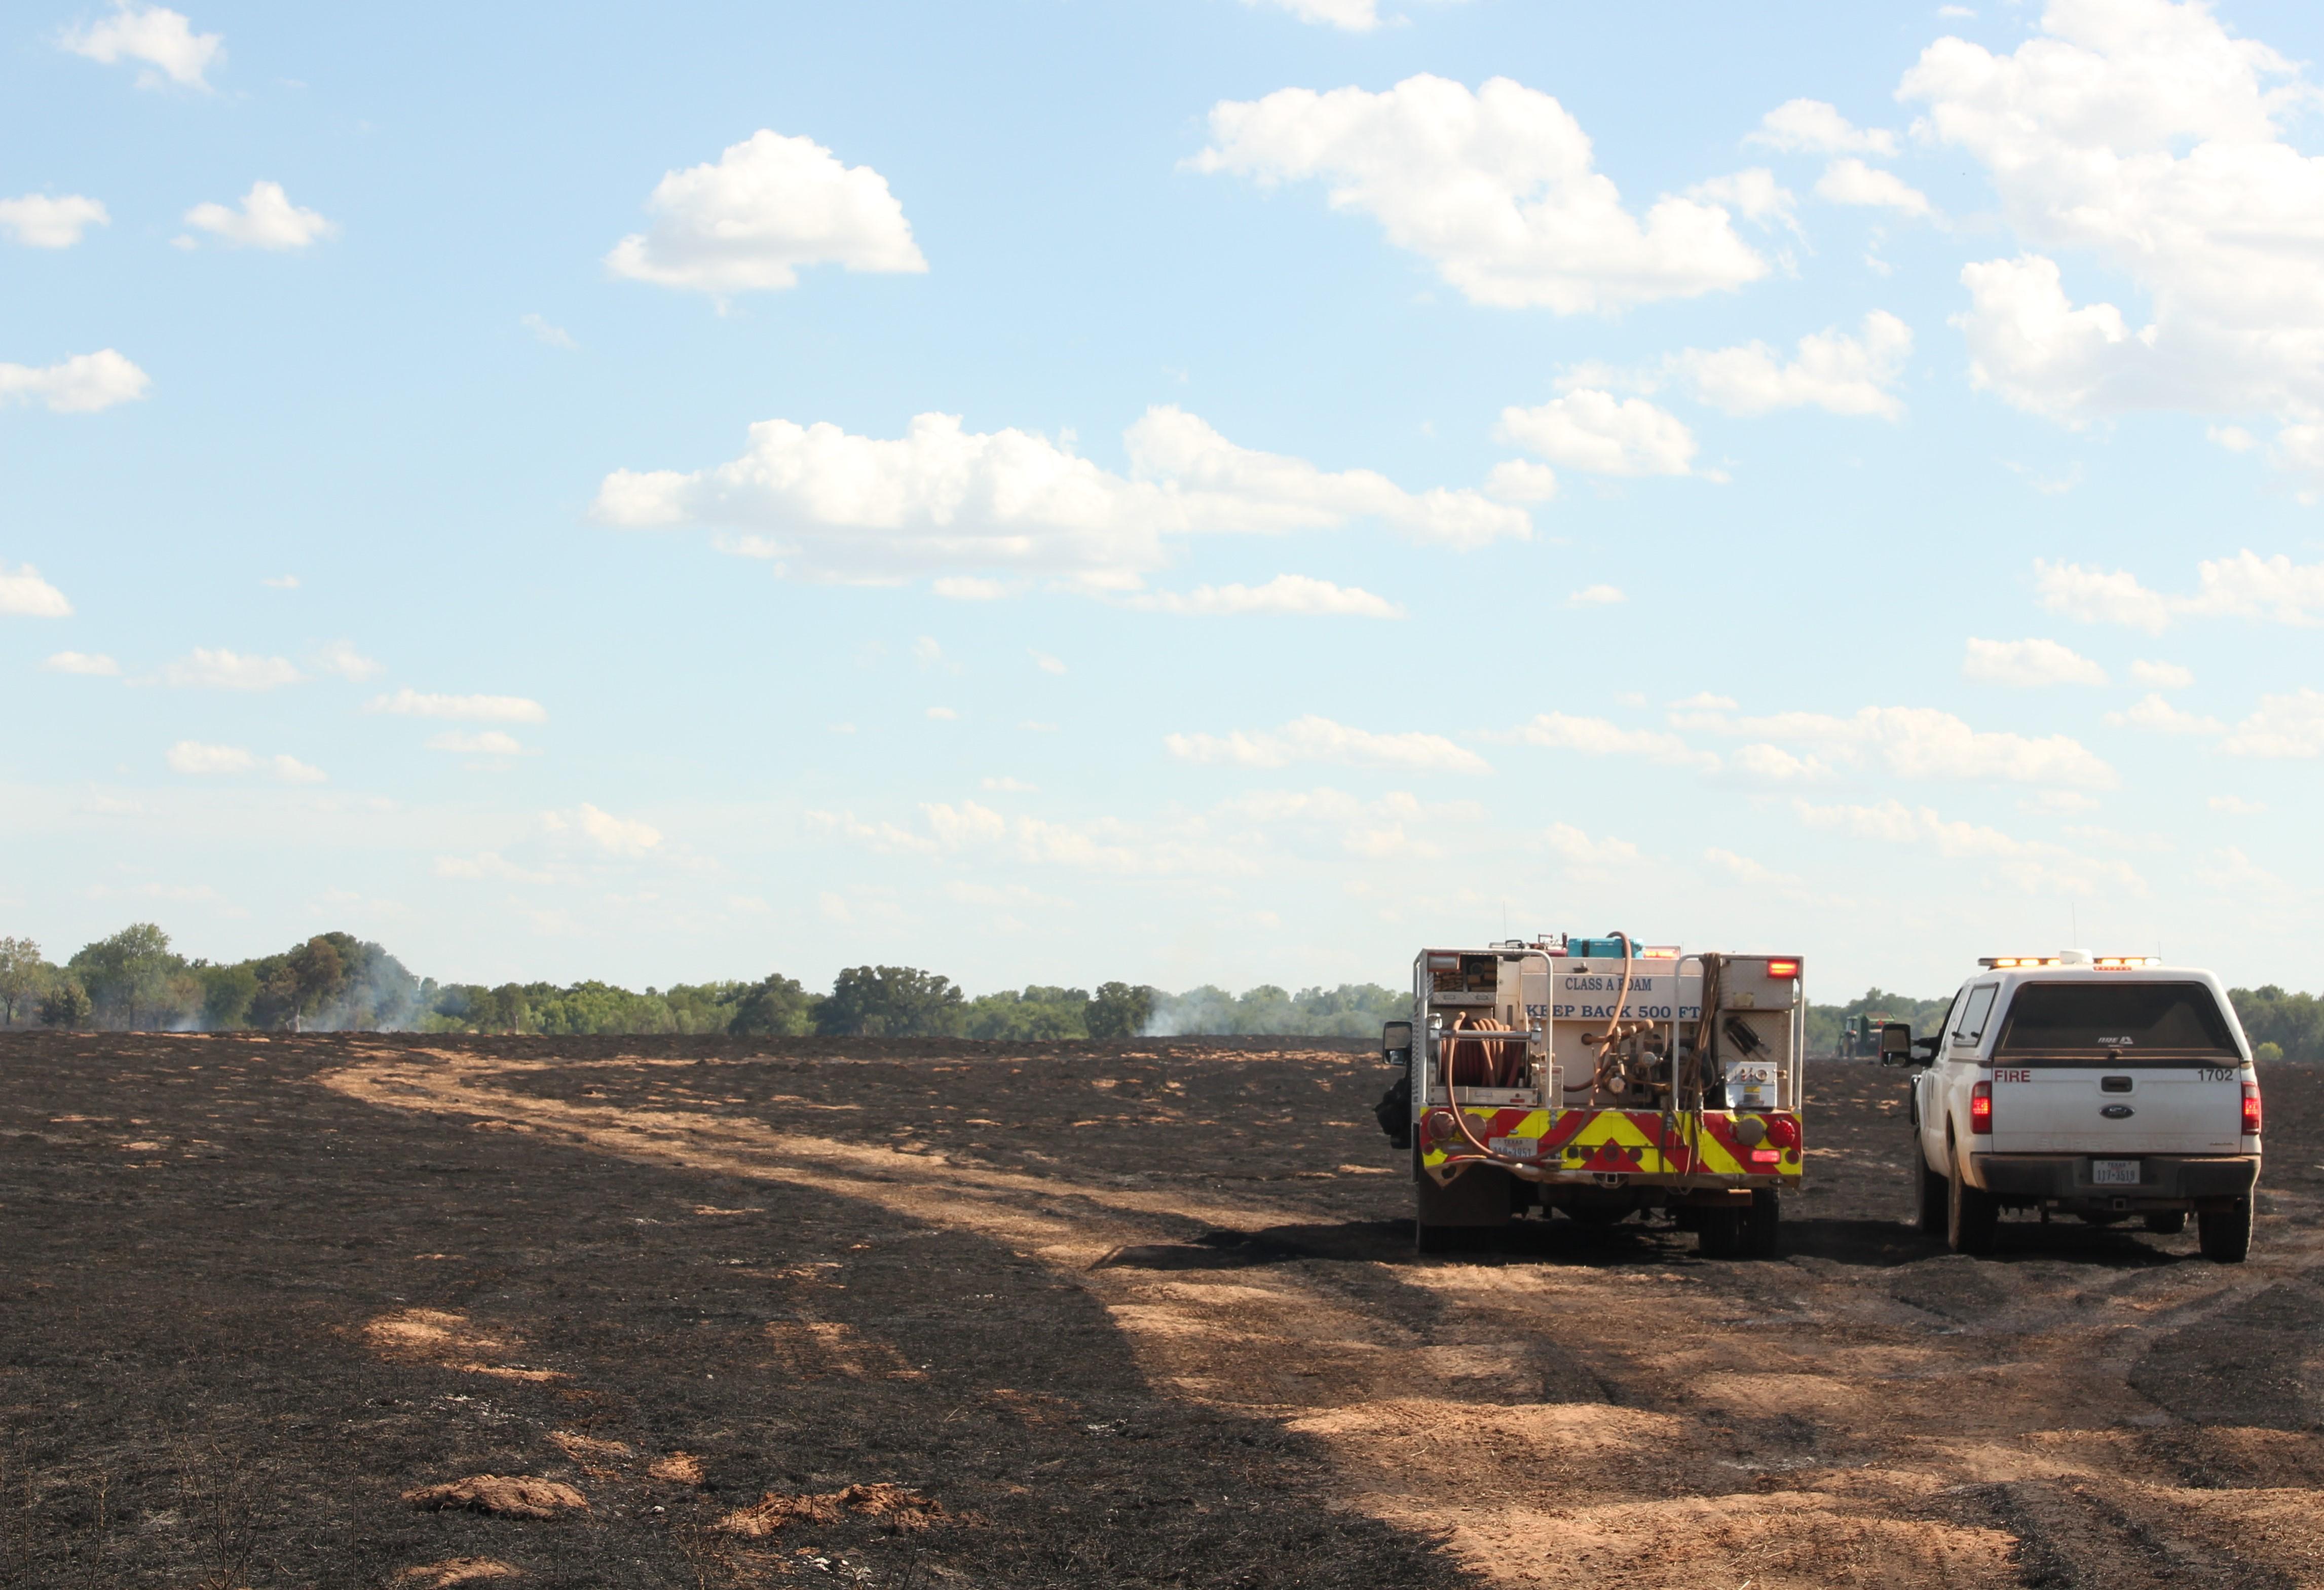 A field burned by the Long Creek Fire